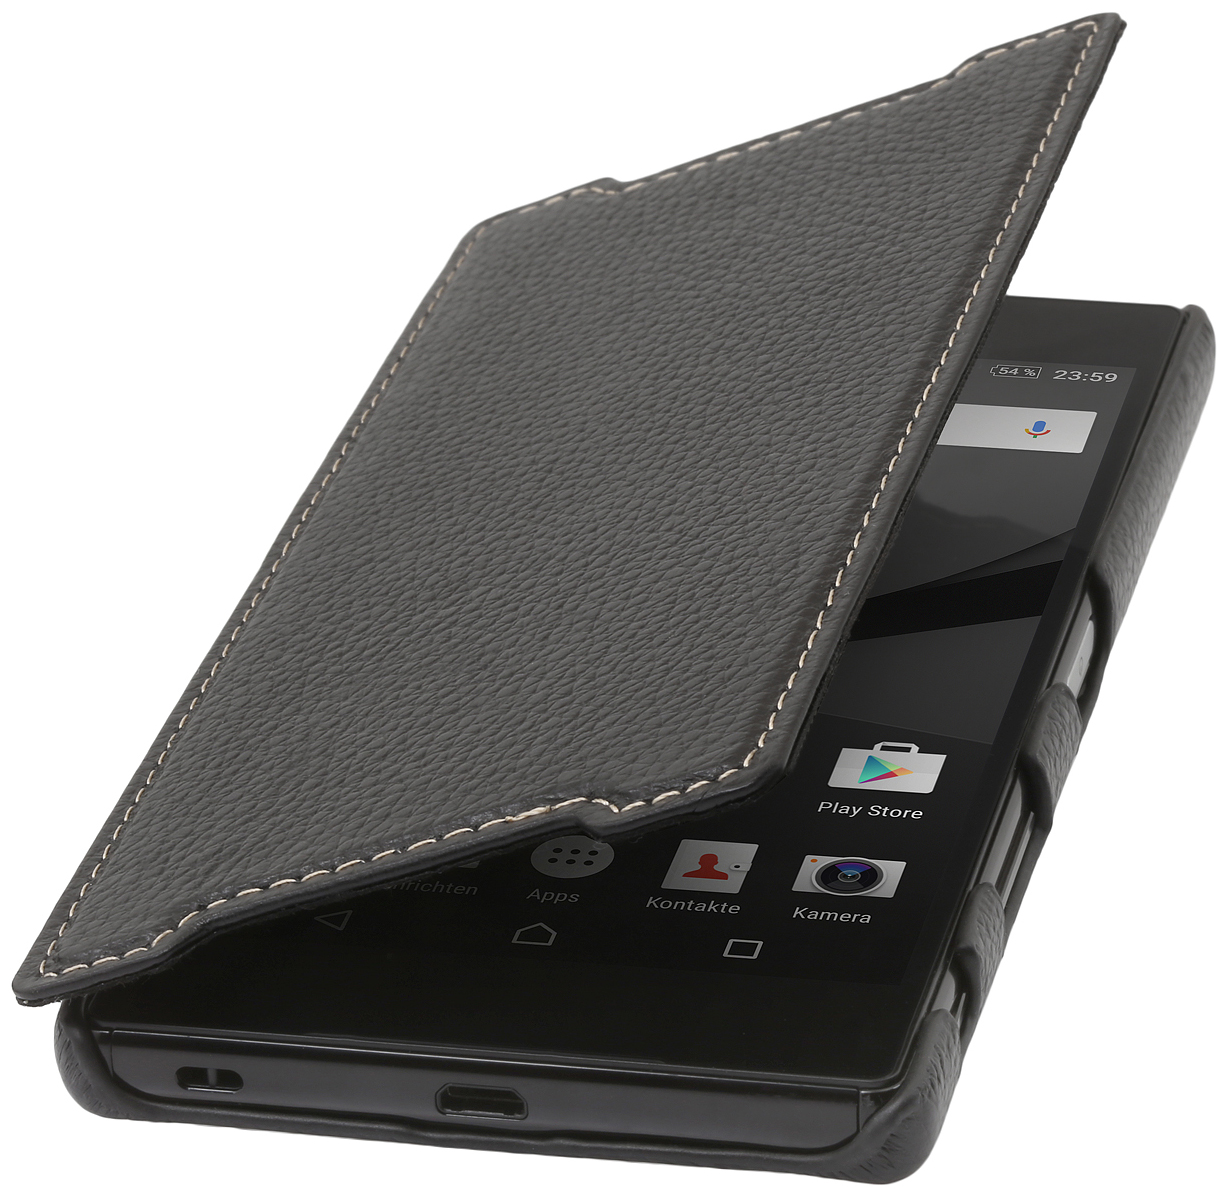 StilGut - Xperia Z5 Premium leather case 